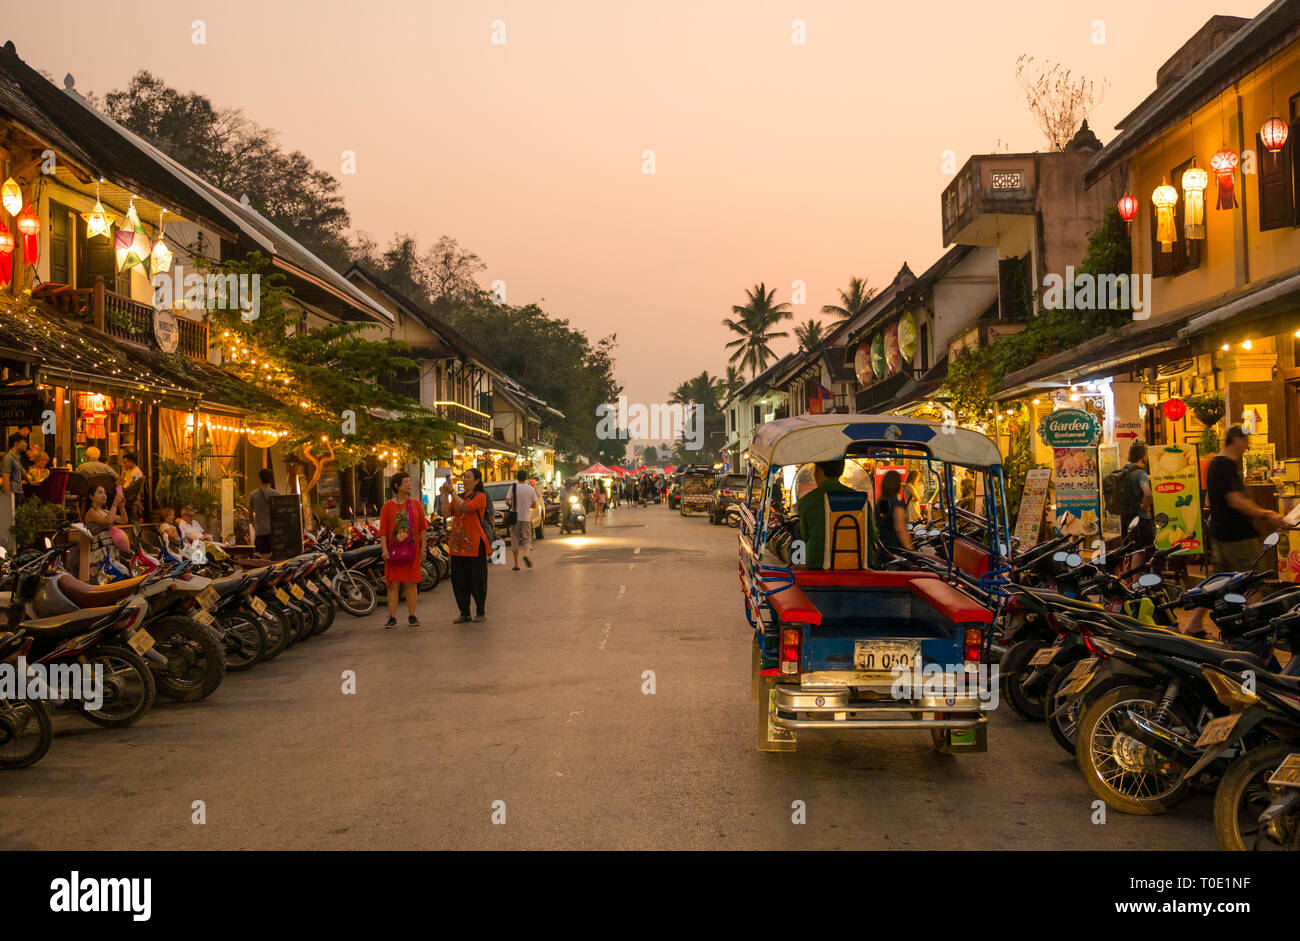 Tourists shopping at shops open at night with motorbikes and tuk tuk, Luang Prabang, Laos, SE Asia Stock Photo